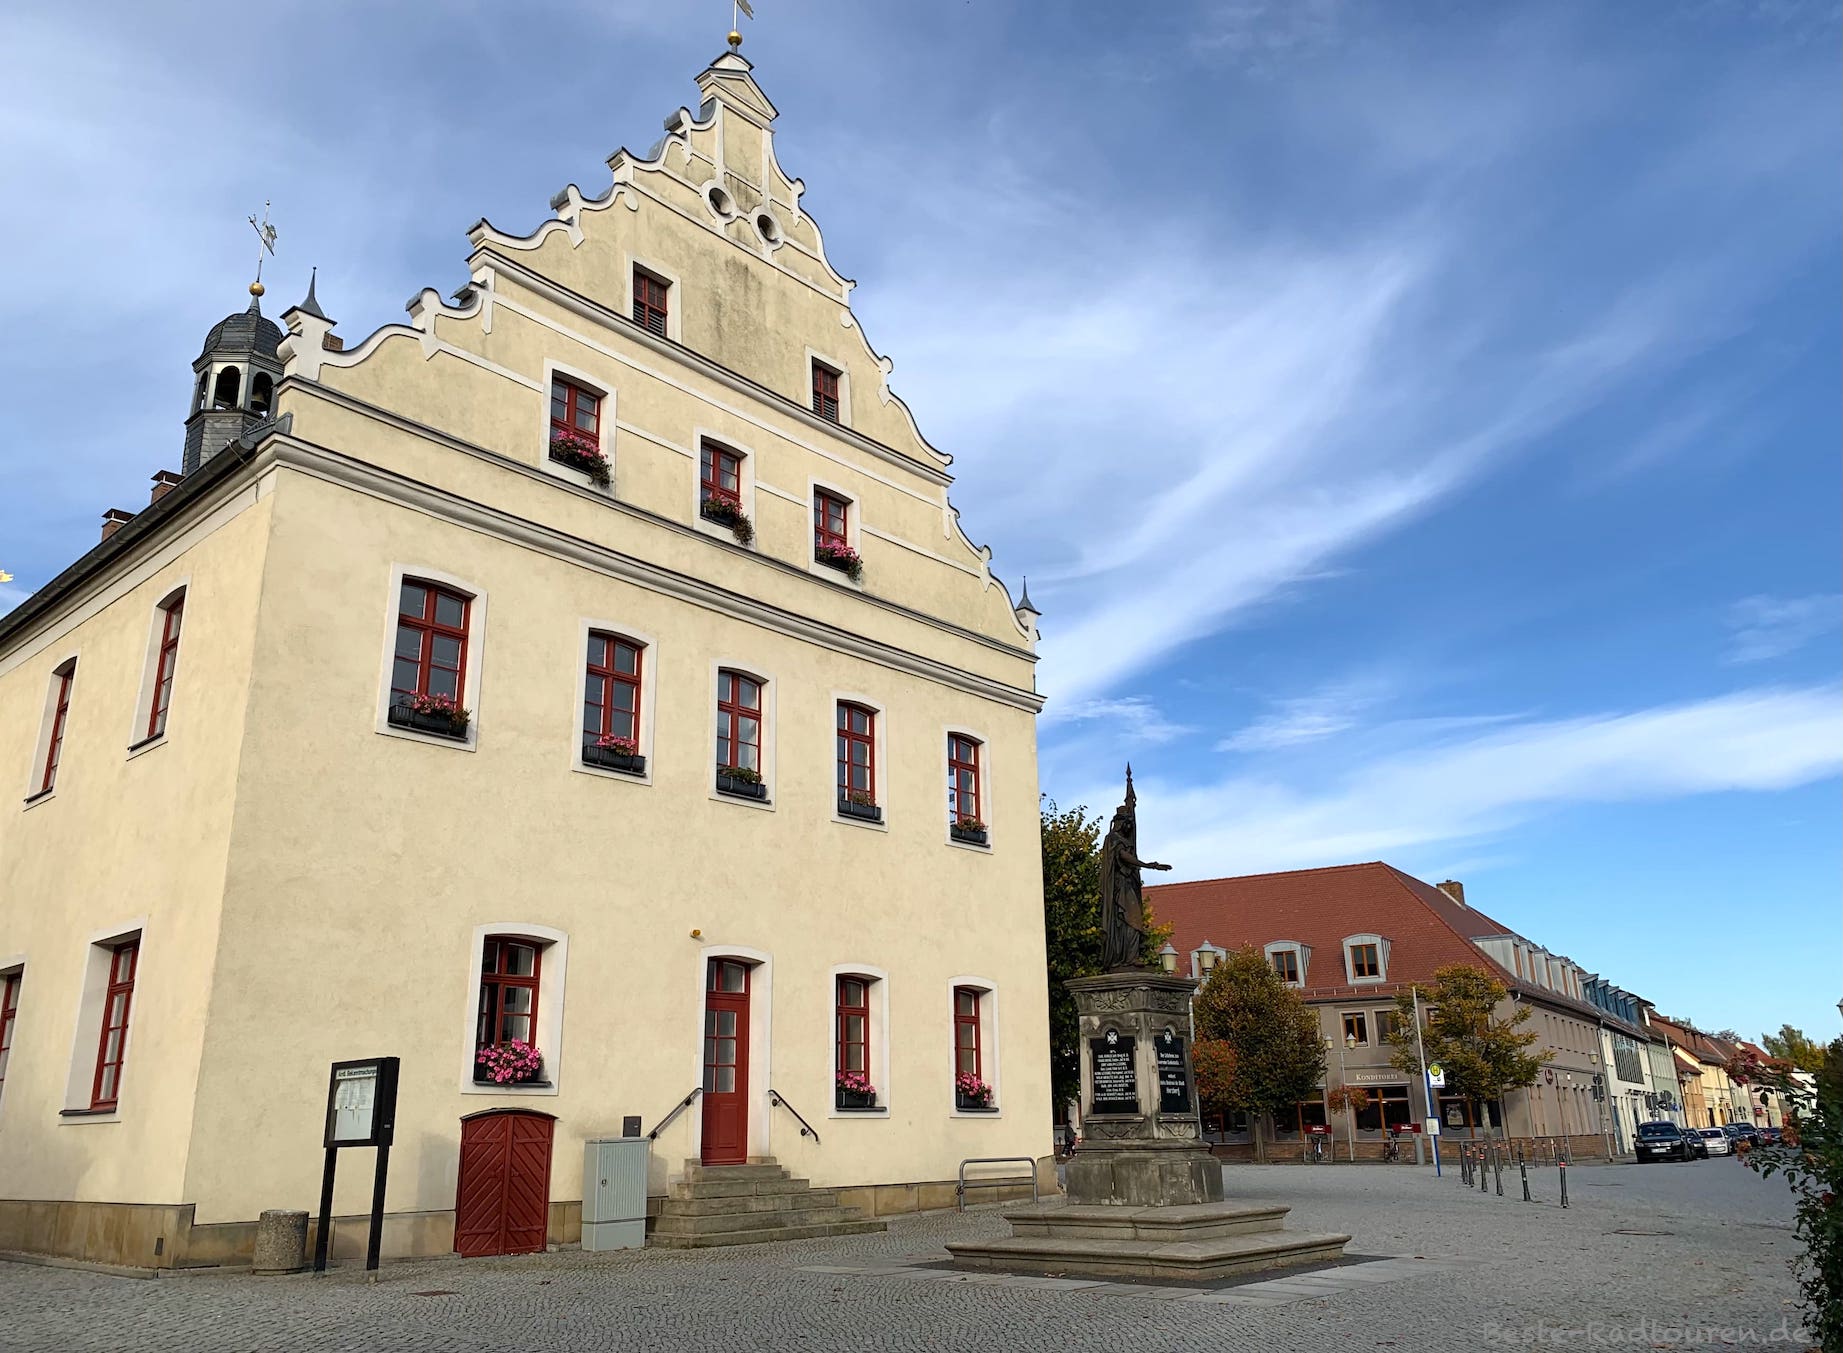 Foto vom Marktplatz aus: Rathaus Herzberg Elster, Blick in die Mönchsstraße